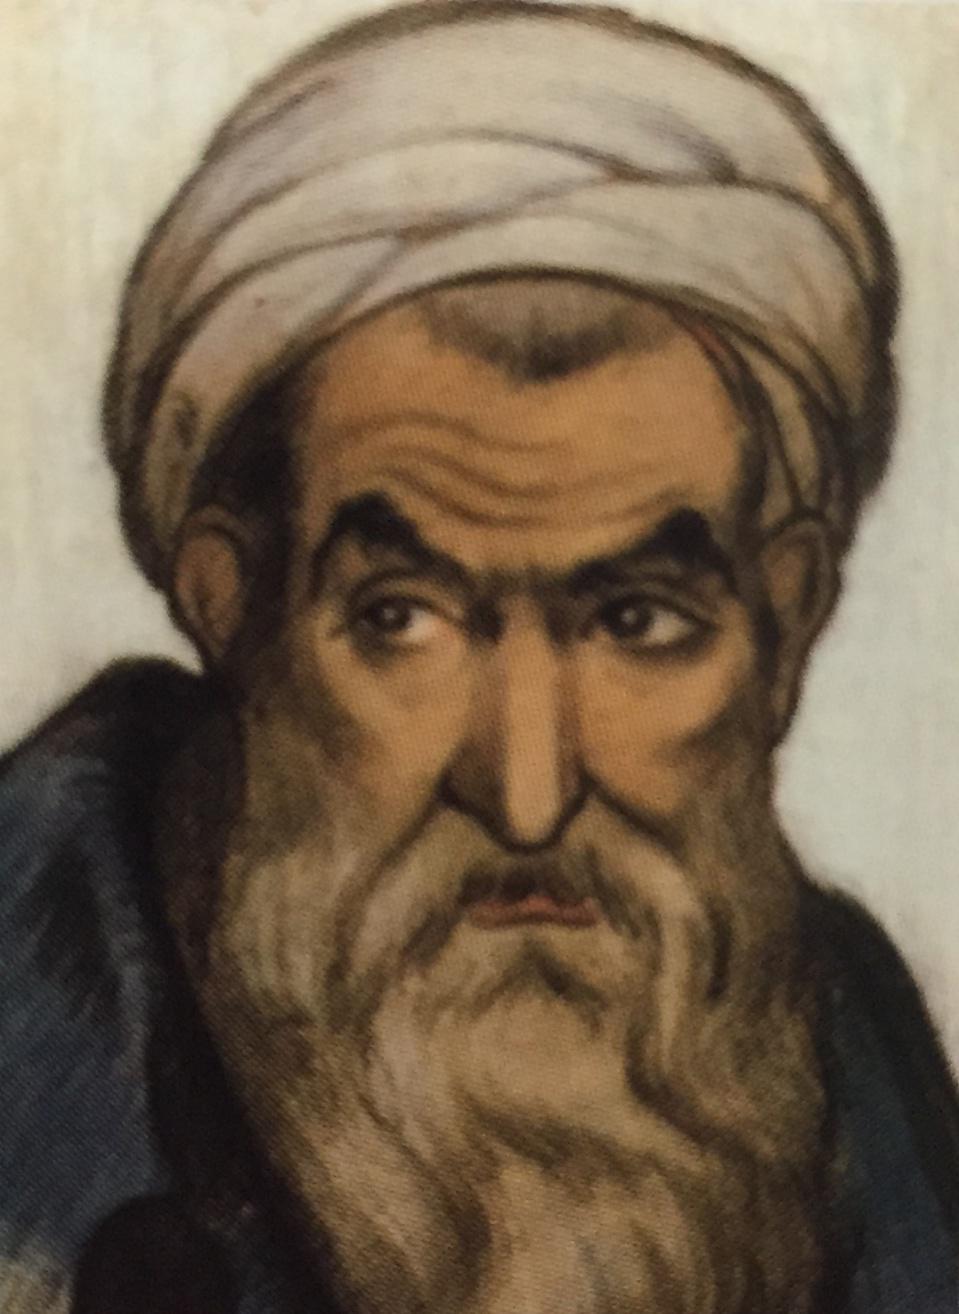 Rabbi Ephraim Al Ankawa רבי אפרים אלנקווה